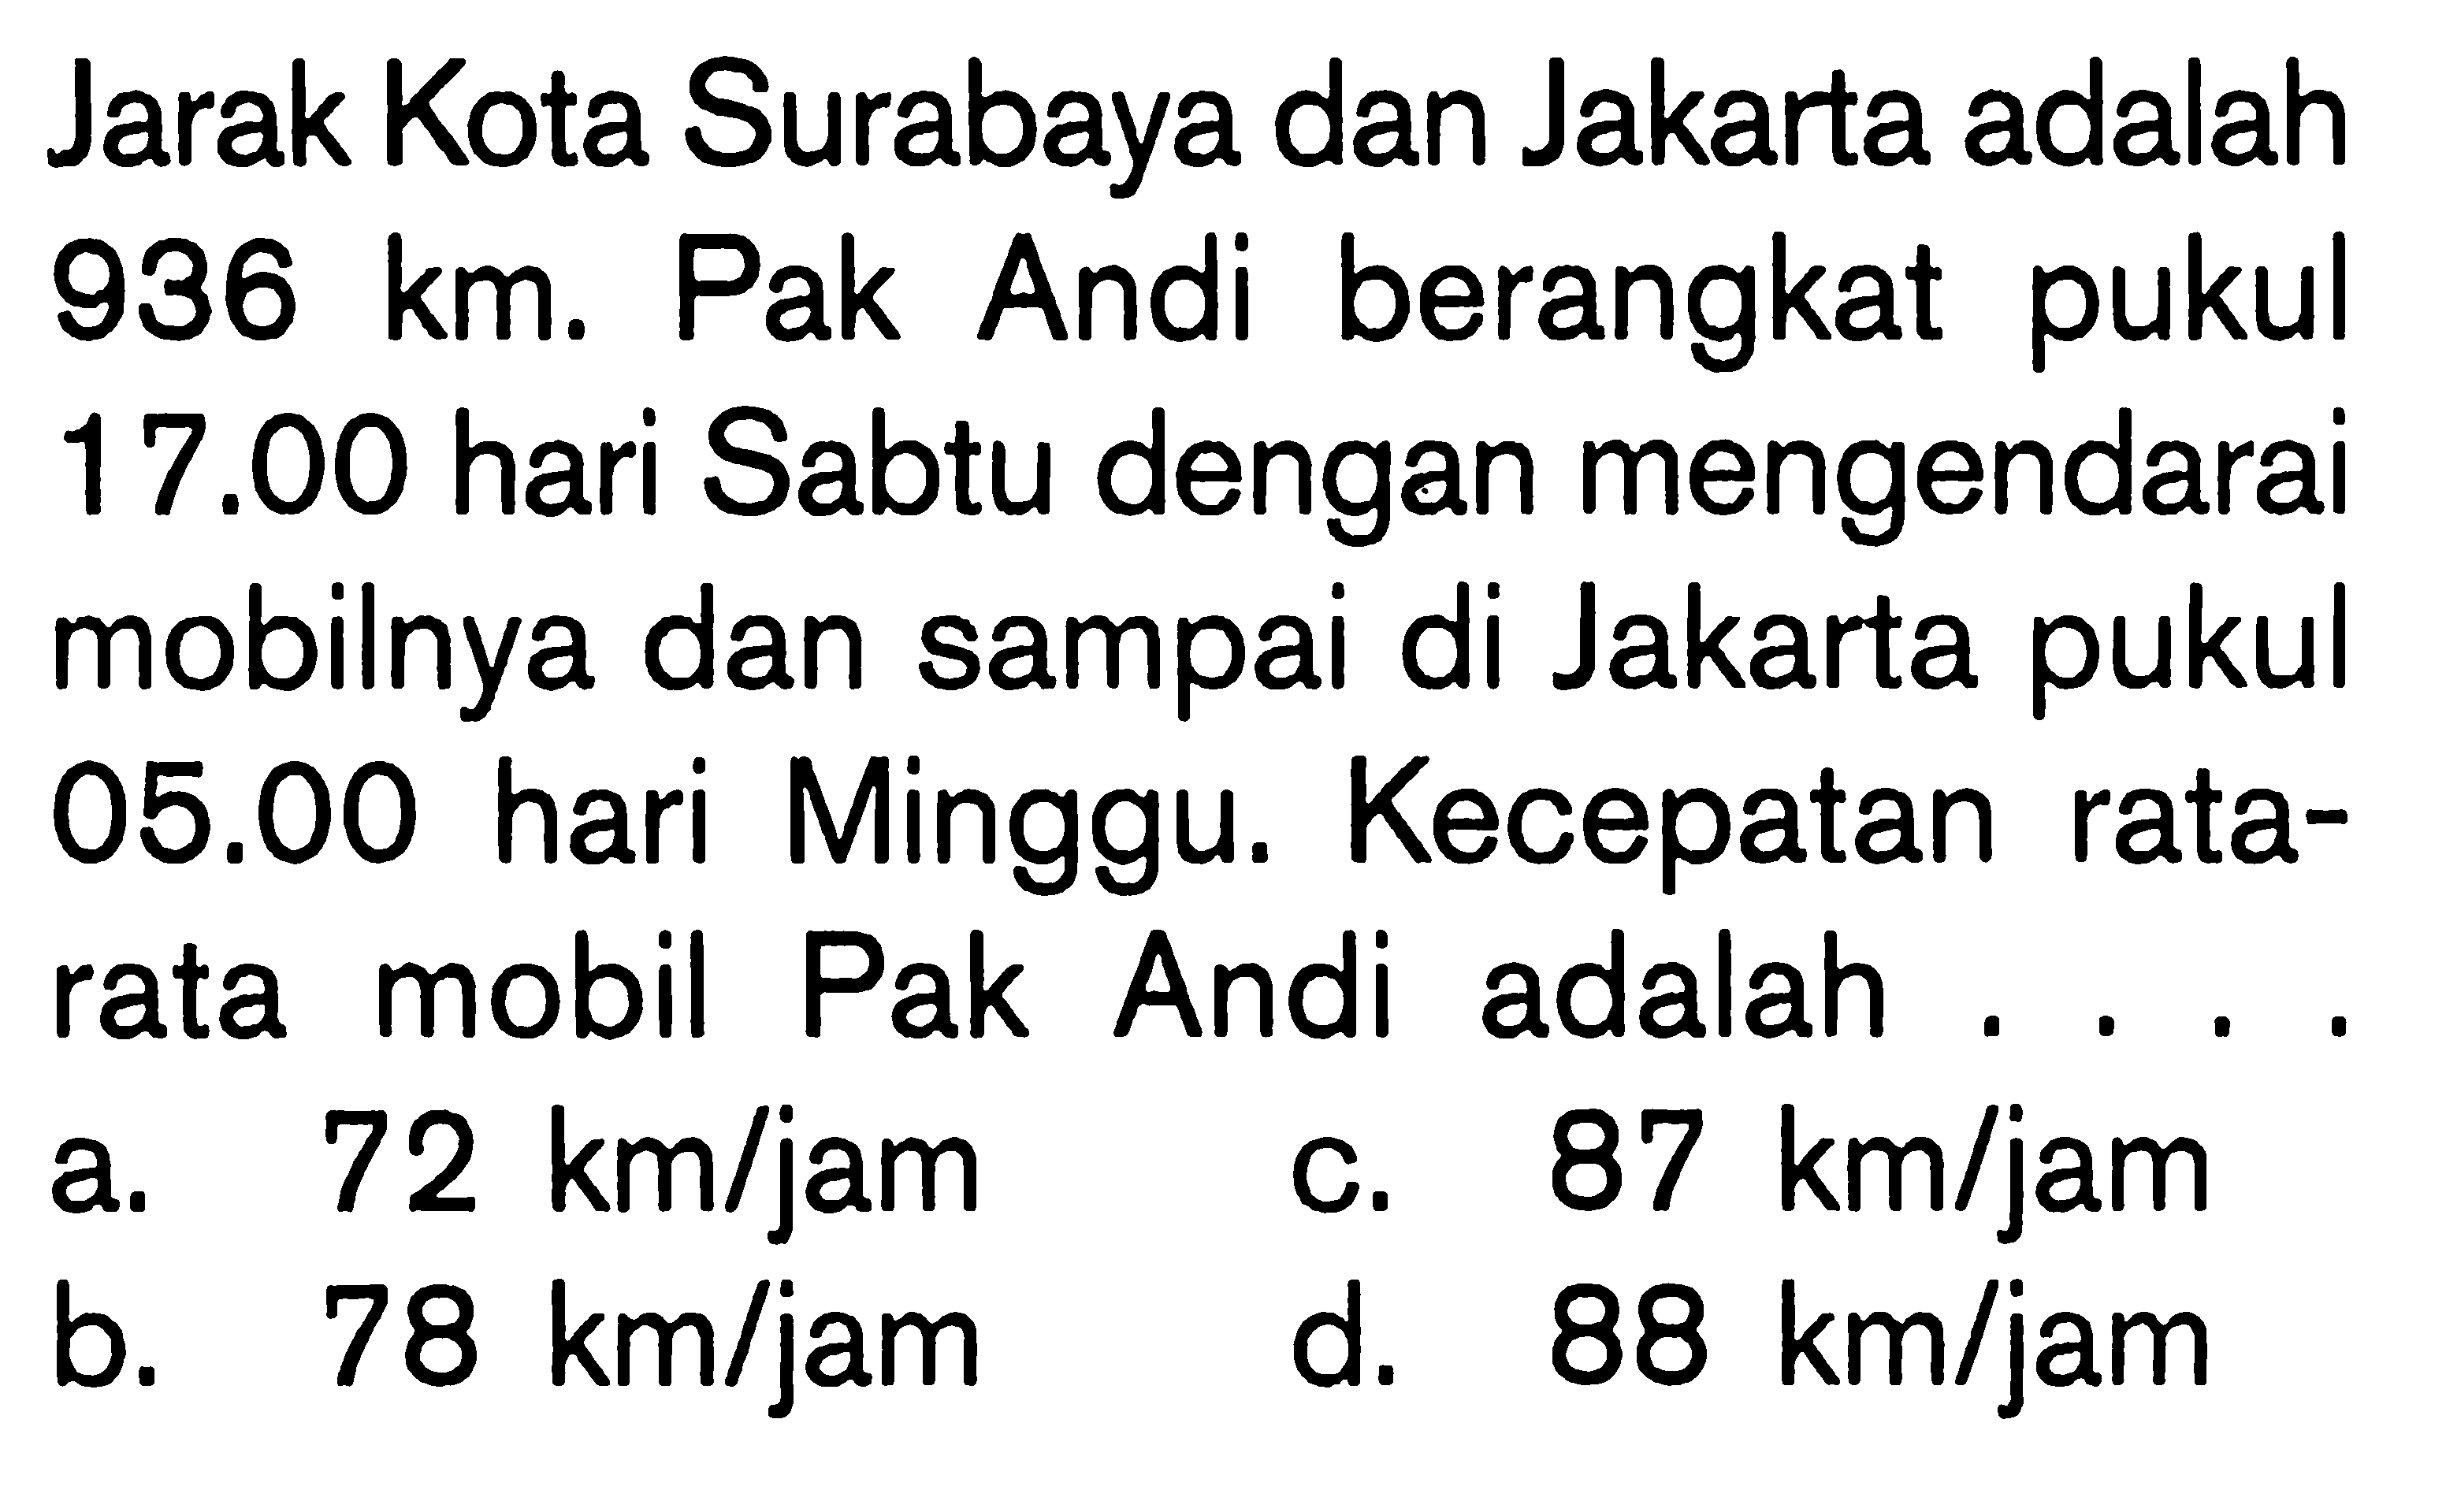 Jarak Kota Surabaya dan Jakarta adalah 936 km. Pak Andi berangkat pukul 17.00 hari Sabtu dengan mengendarai mobilnya dan sampai di Jakarta pukul 05.00 hari Minggu. Kecepatan rata-rata mobil Pak Andi adalah .... 